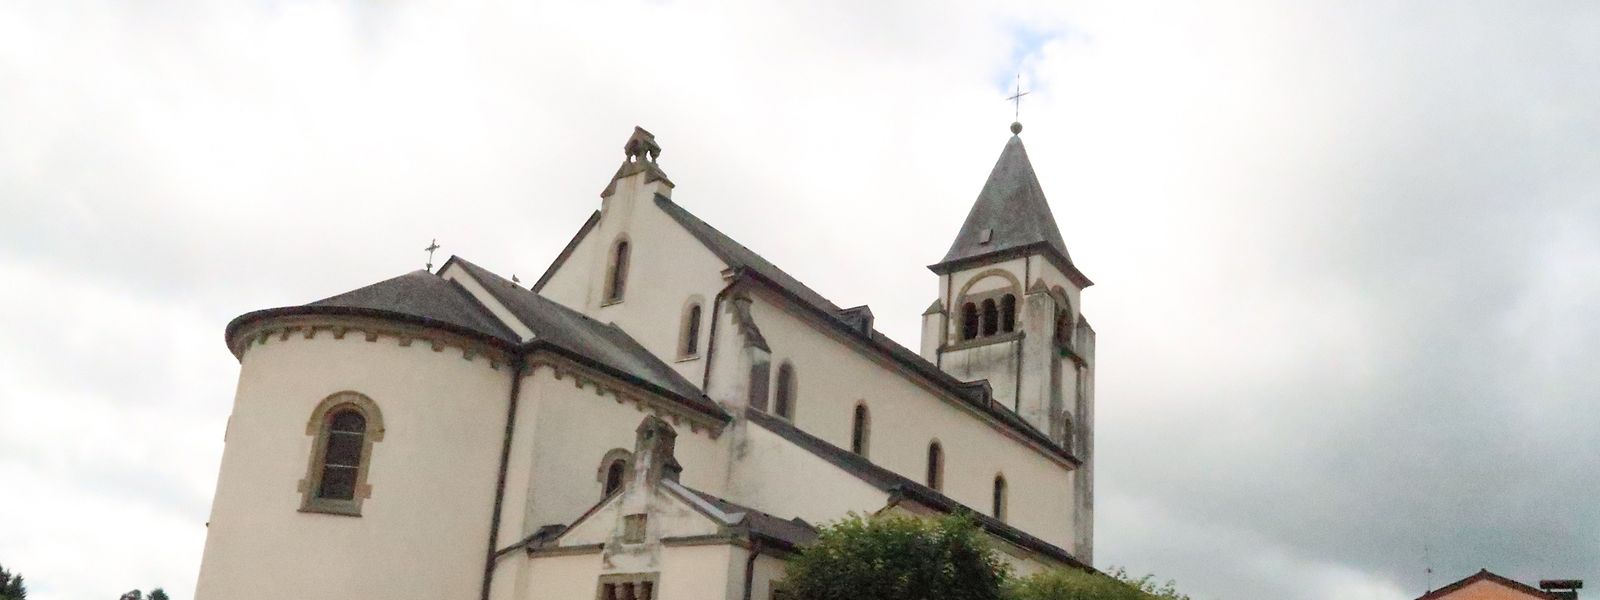 Die Kirche von Lenningen verfügt über ein Mittel- und zwei Seitenschiffe.